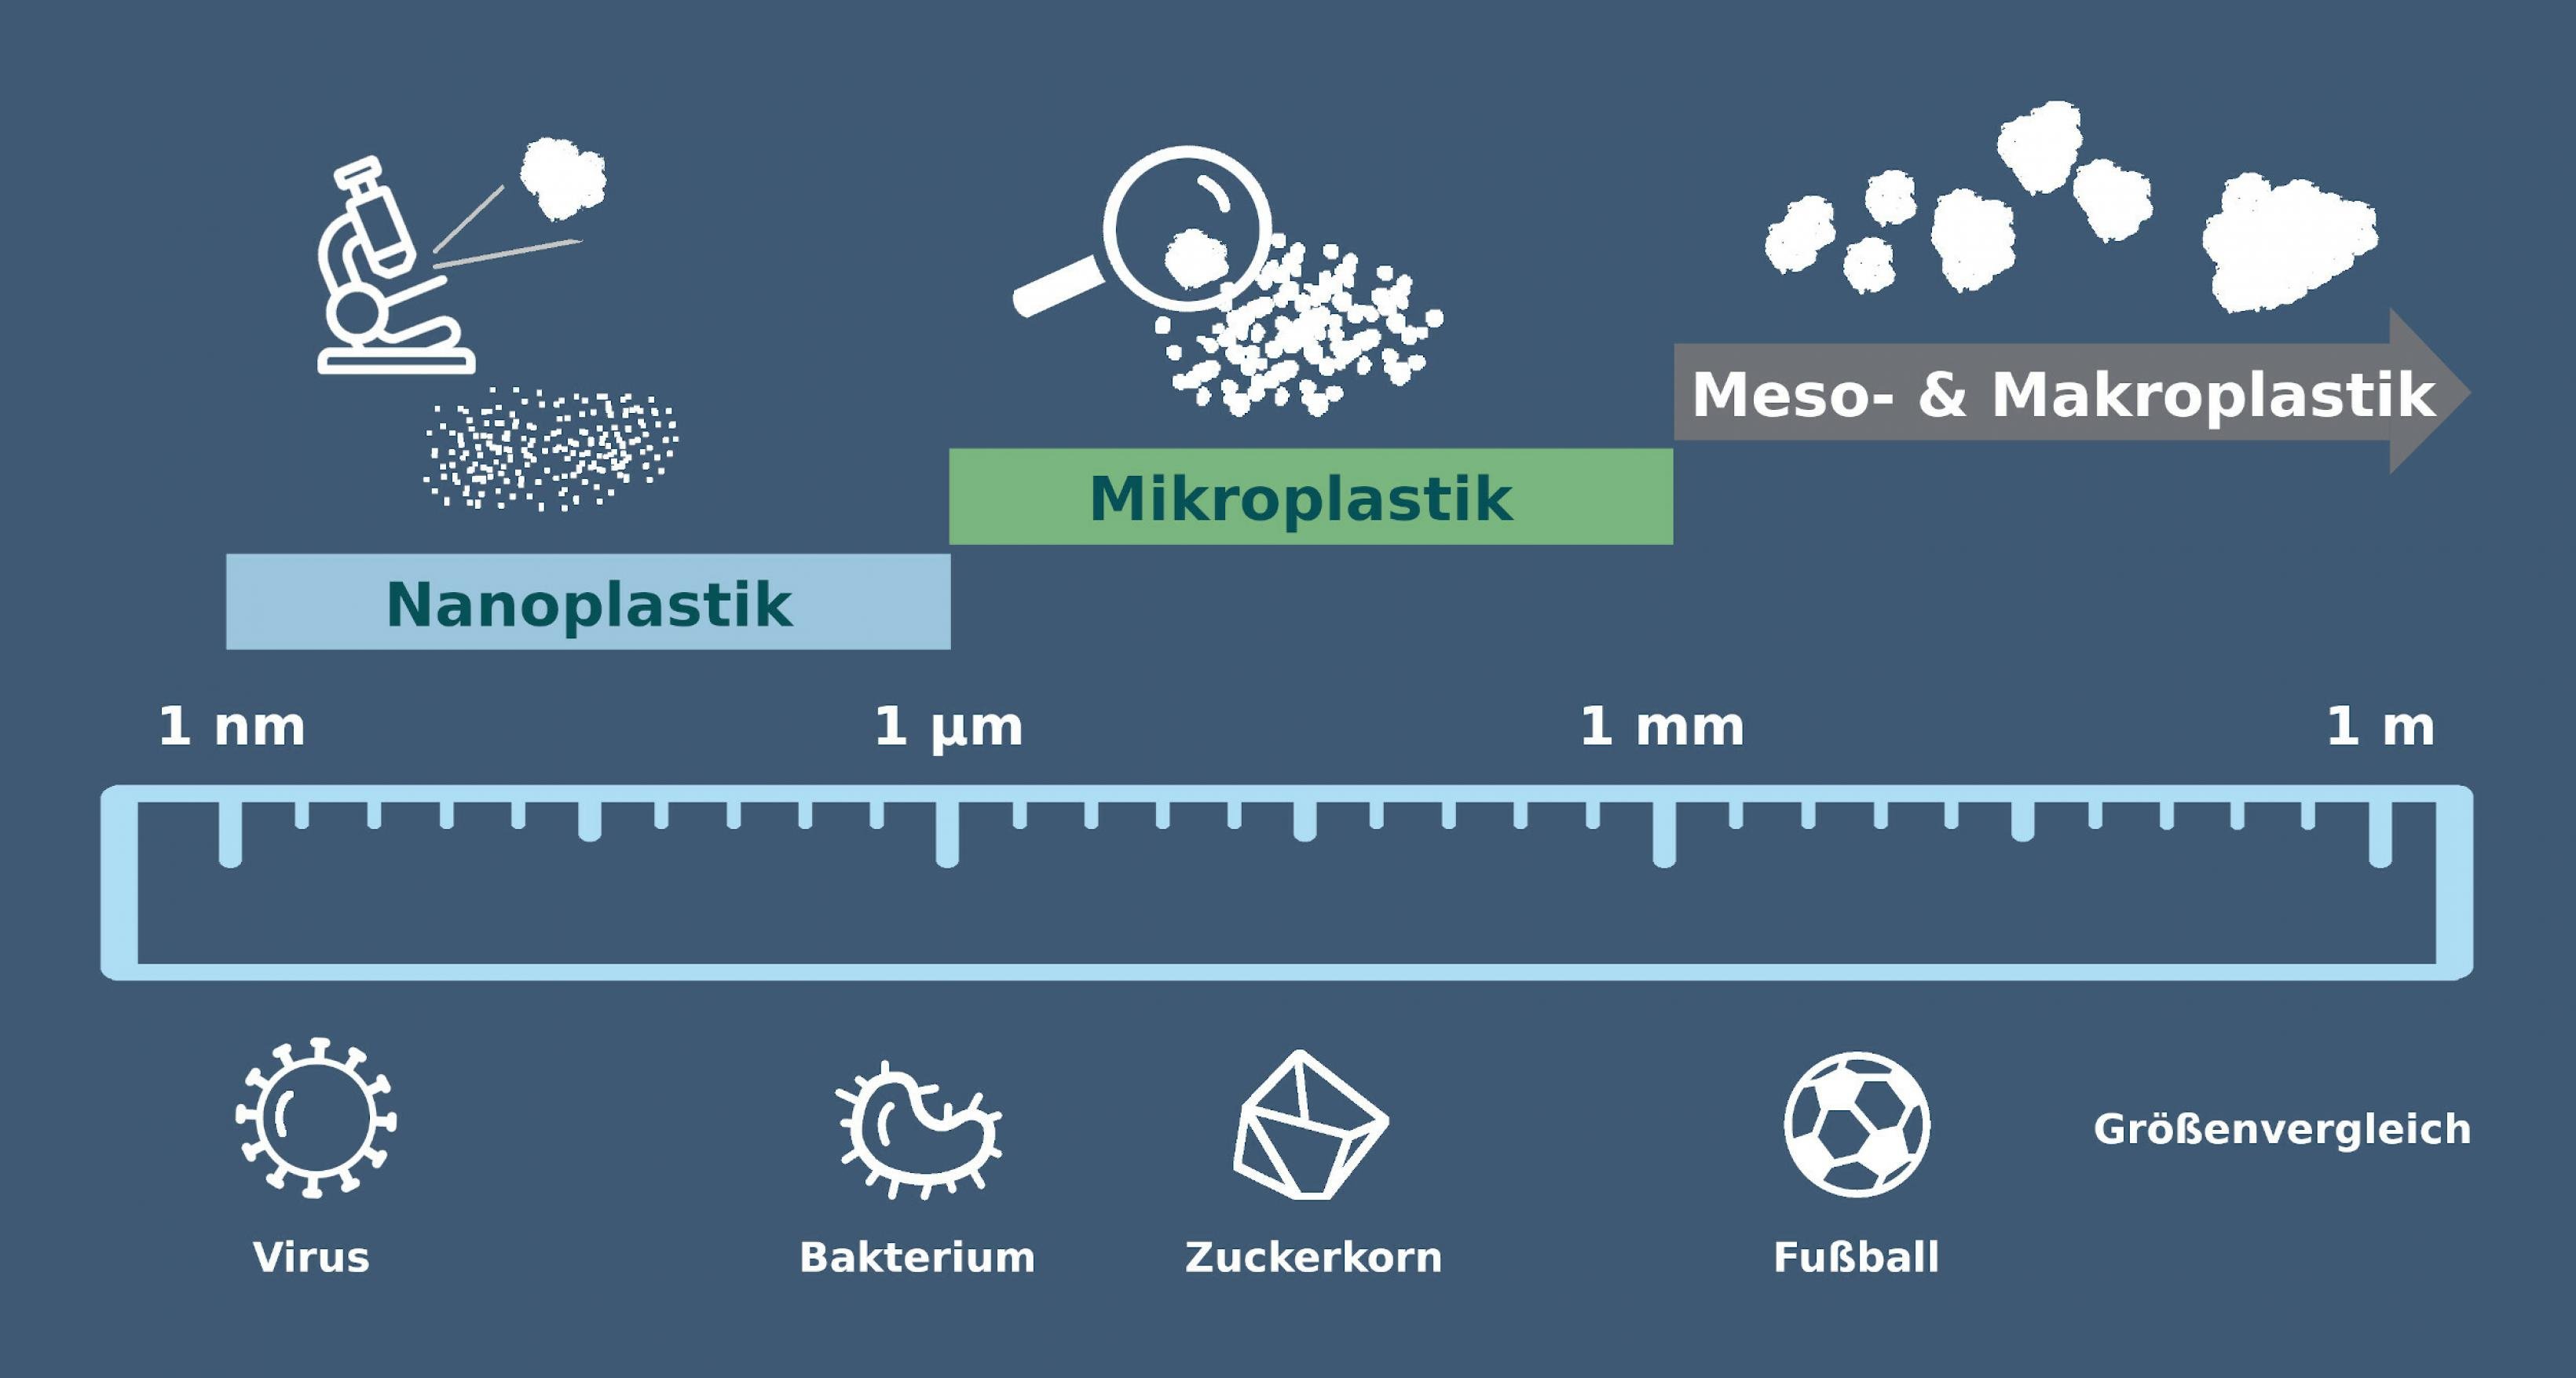 Ein Lineal mit der Skala von Nanometer bis Meter verbildlicht die Einteilung von Plastikpartikeln in Nano- und Mikroplastik sowie Meso- und Makroplastik. Zum Größenvergleich sind angegeben: ein Virus (Nanometerbereich), ein Bakterium (kleiner Mikrometerbereich), ein Zuckerkorn (mittlerer bis hoher Mikrometerbereich) sowie ein Fußball (Zentimeterbereich).